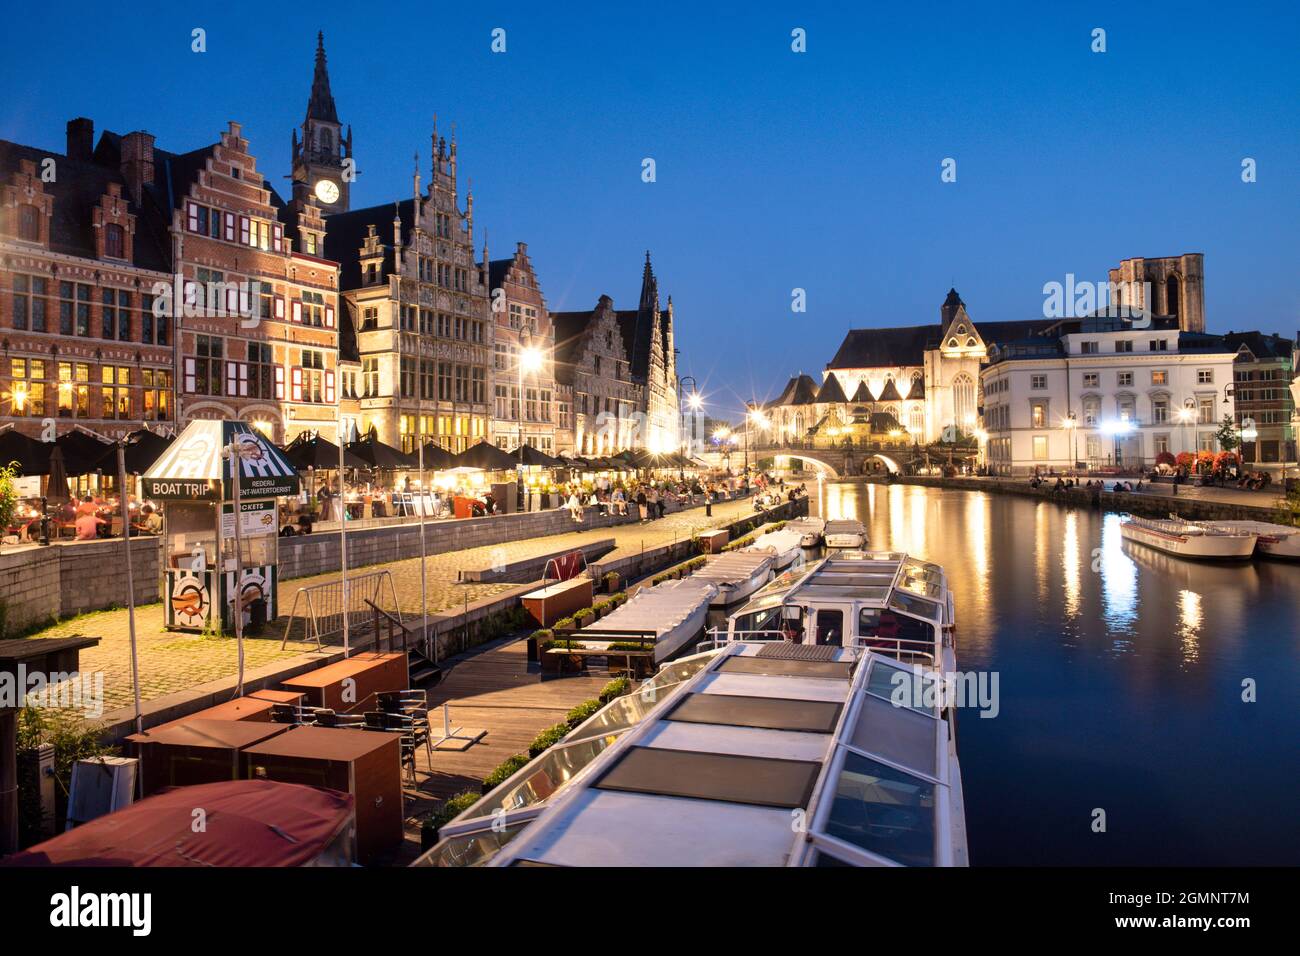 Historisches Zentrum von Gent am Abend, Ganslei Kai, Blick von der Grasbrug, Ausflugsboote, mittelalterliche Häuser, Gent, Flandern, Belgien, Europa Stockfoto